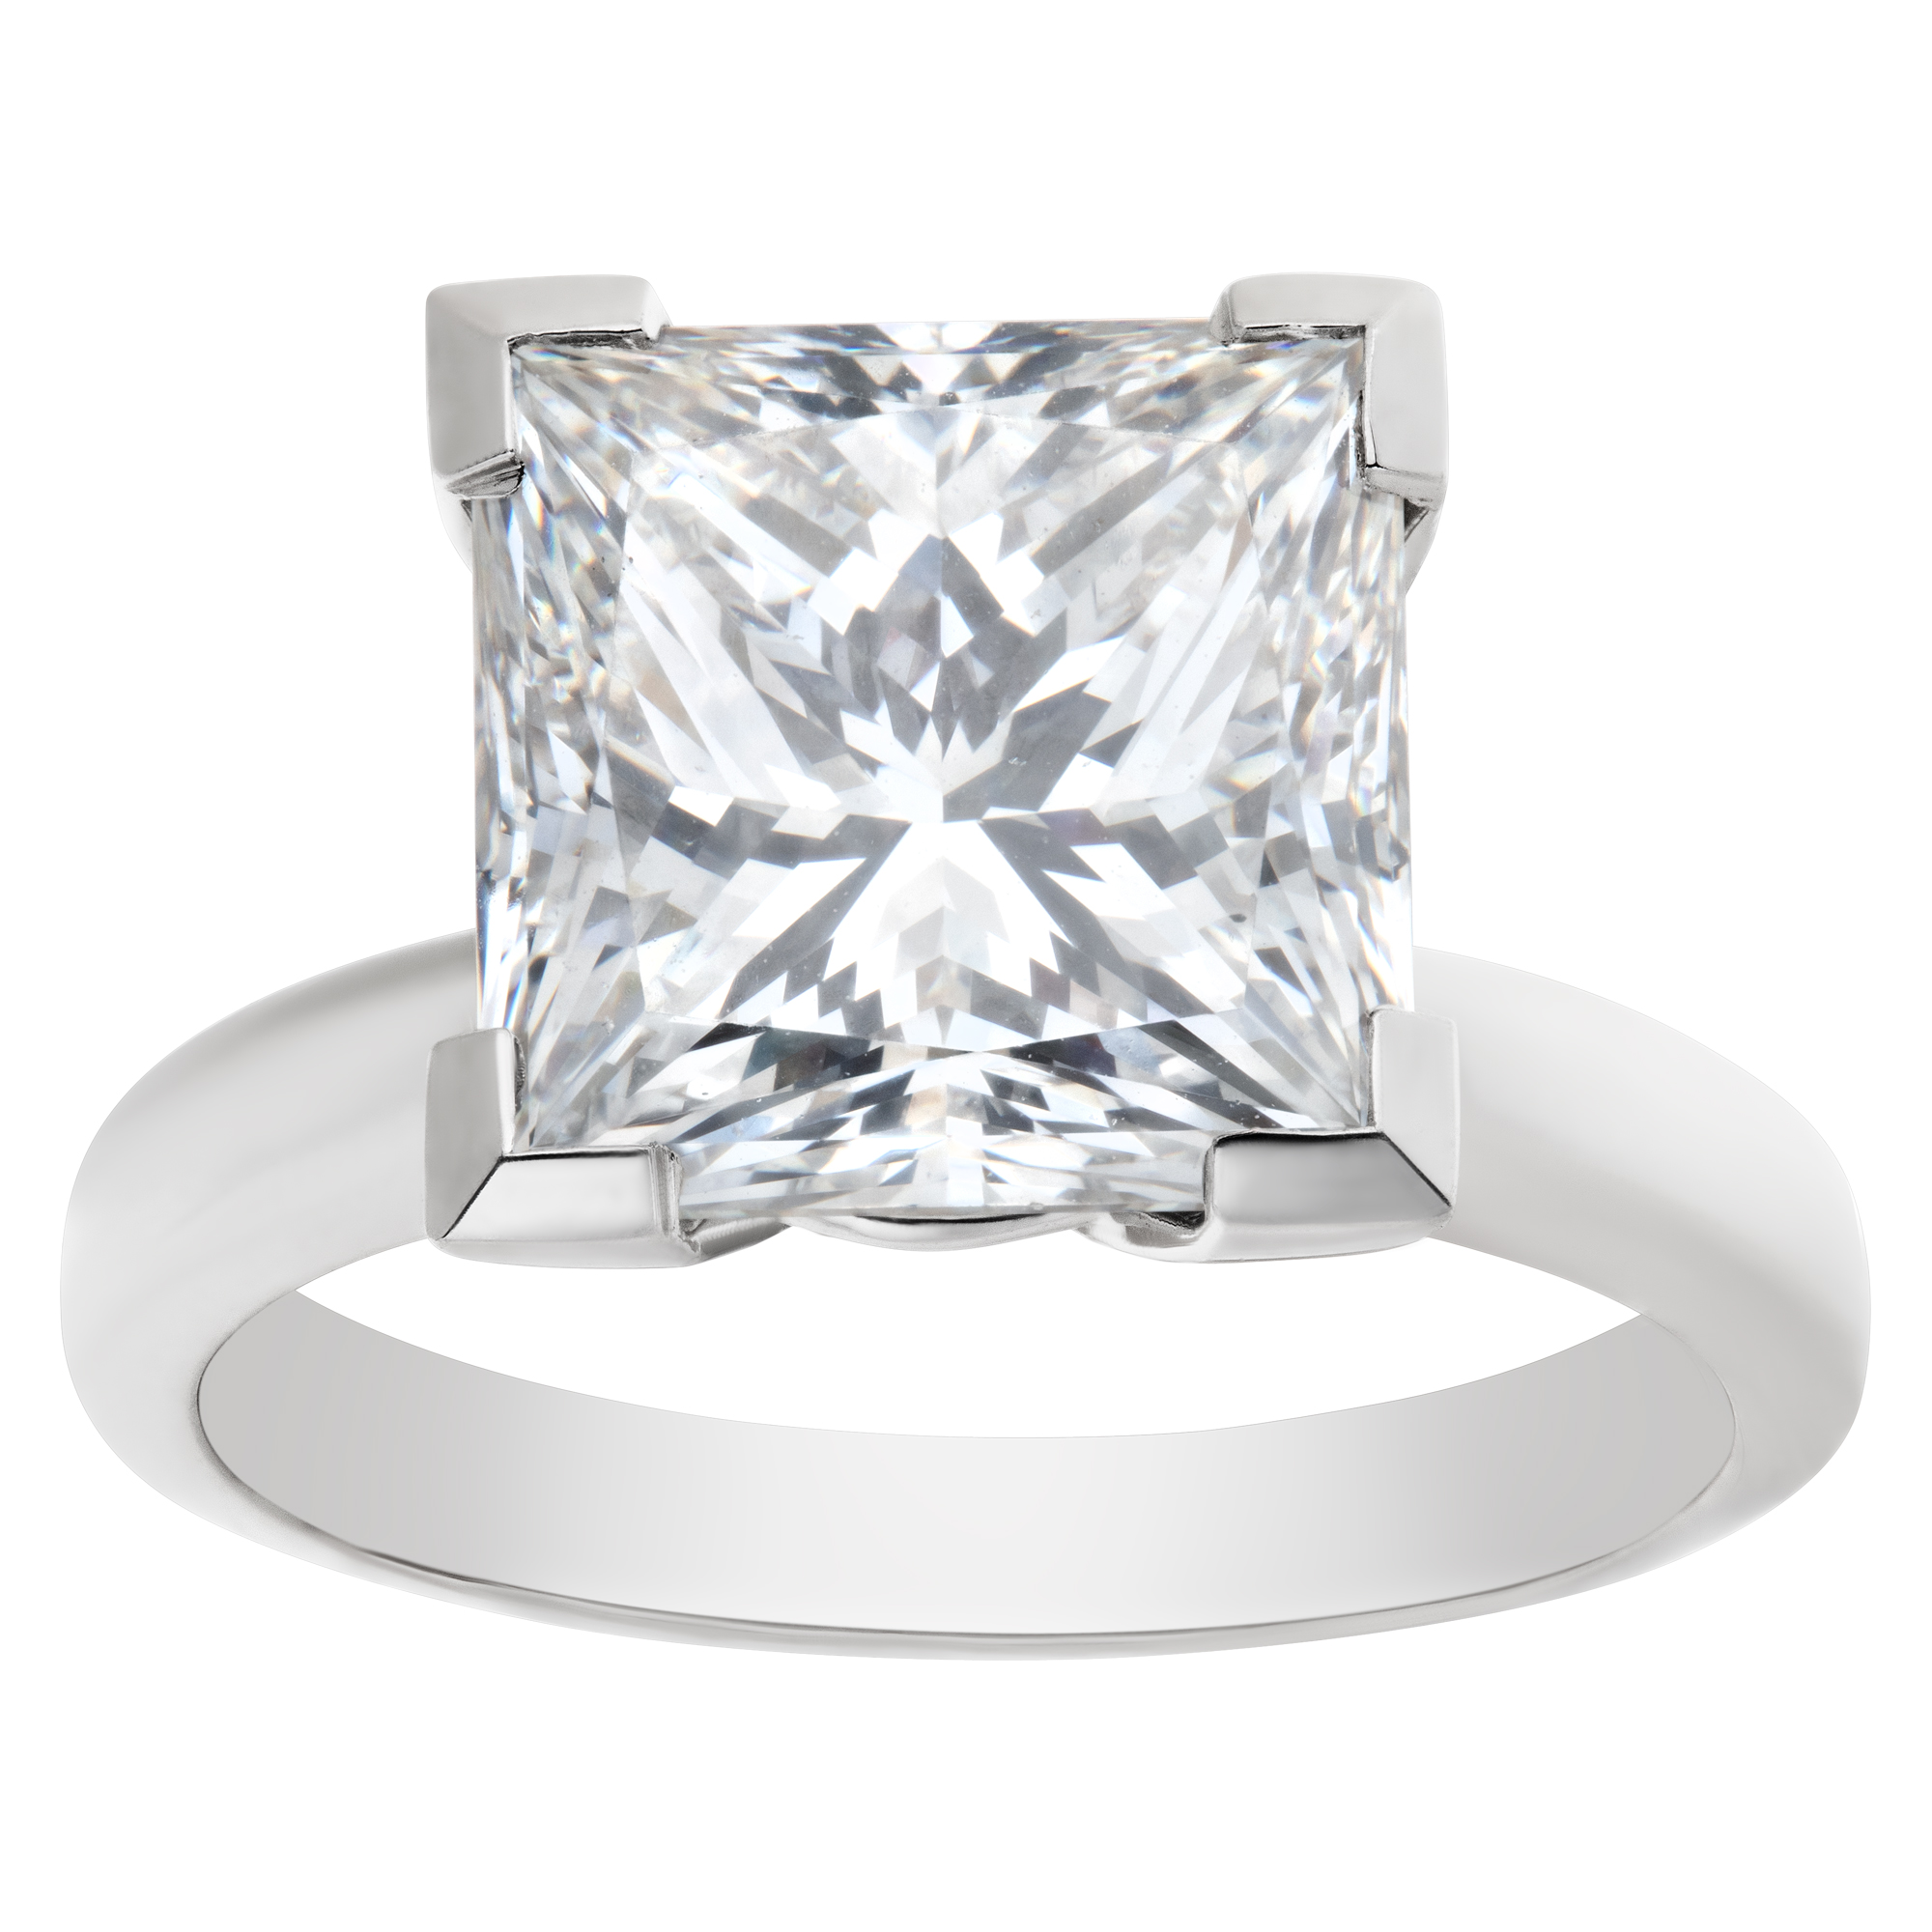 GIA certified square modified brilliant cut diamond 4.67 carat ( F color, VS2 clarity) solitaire rin